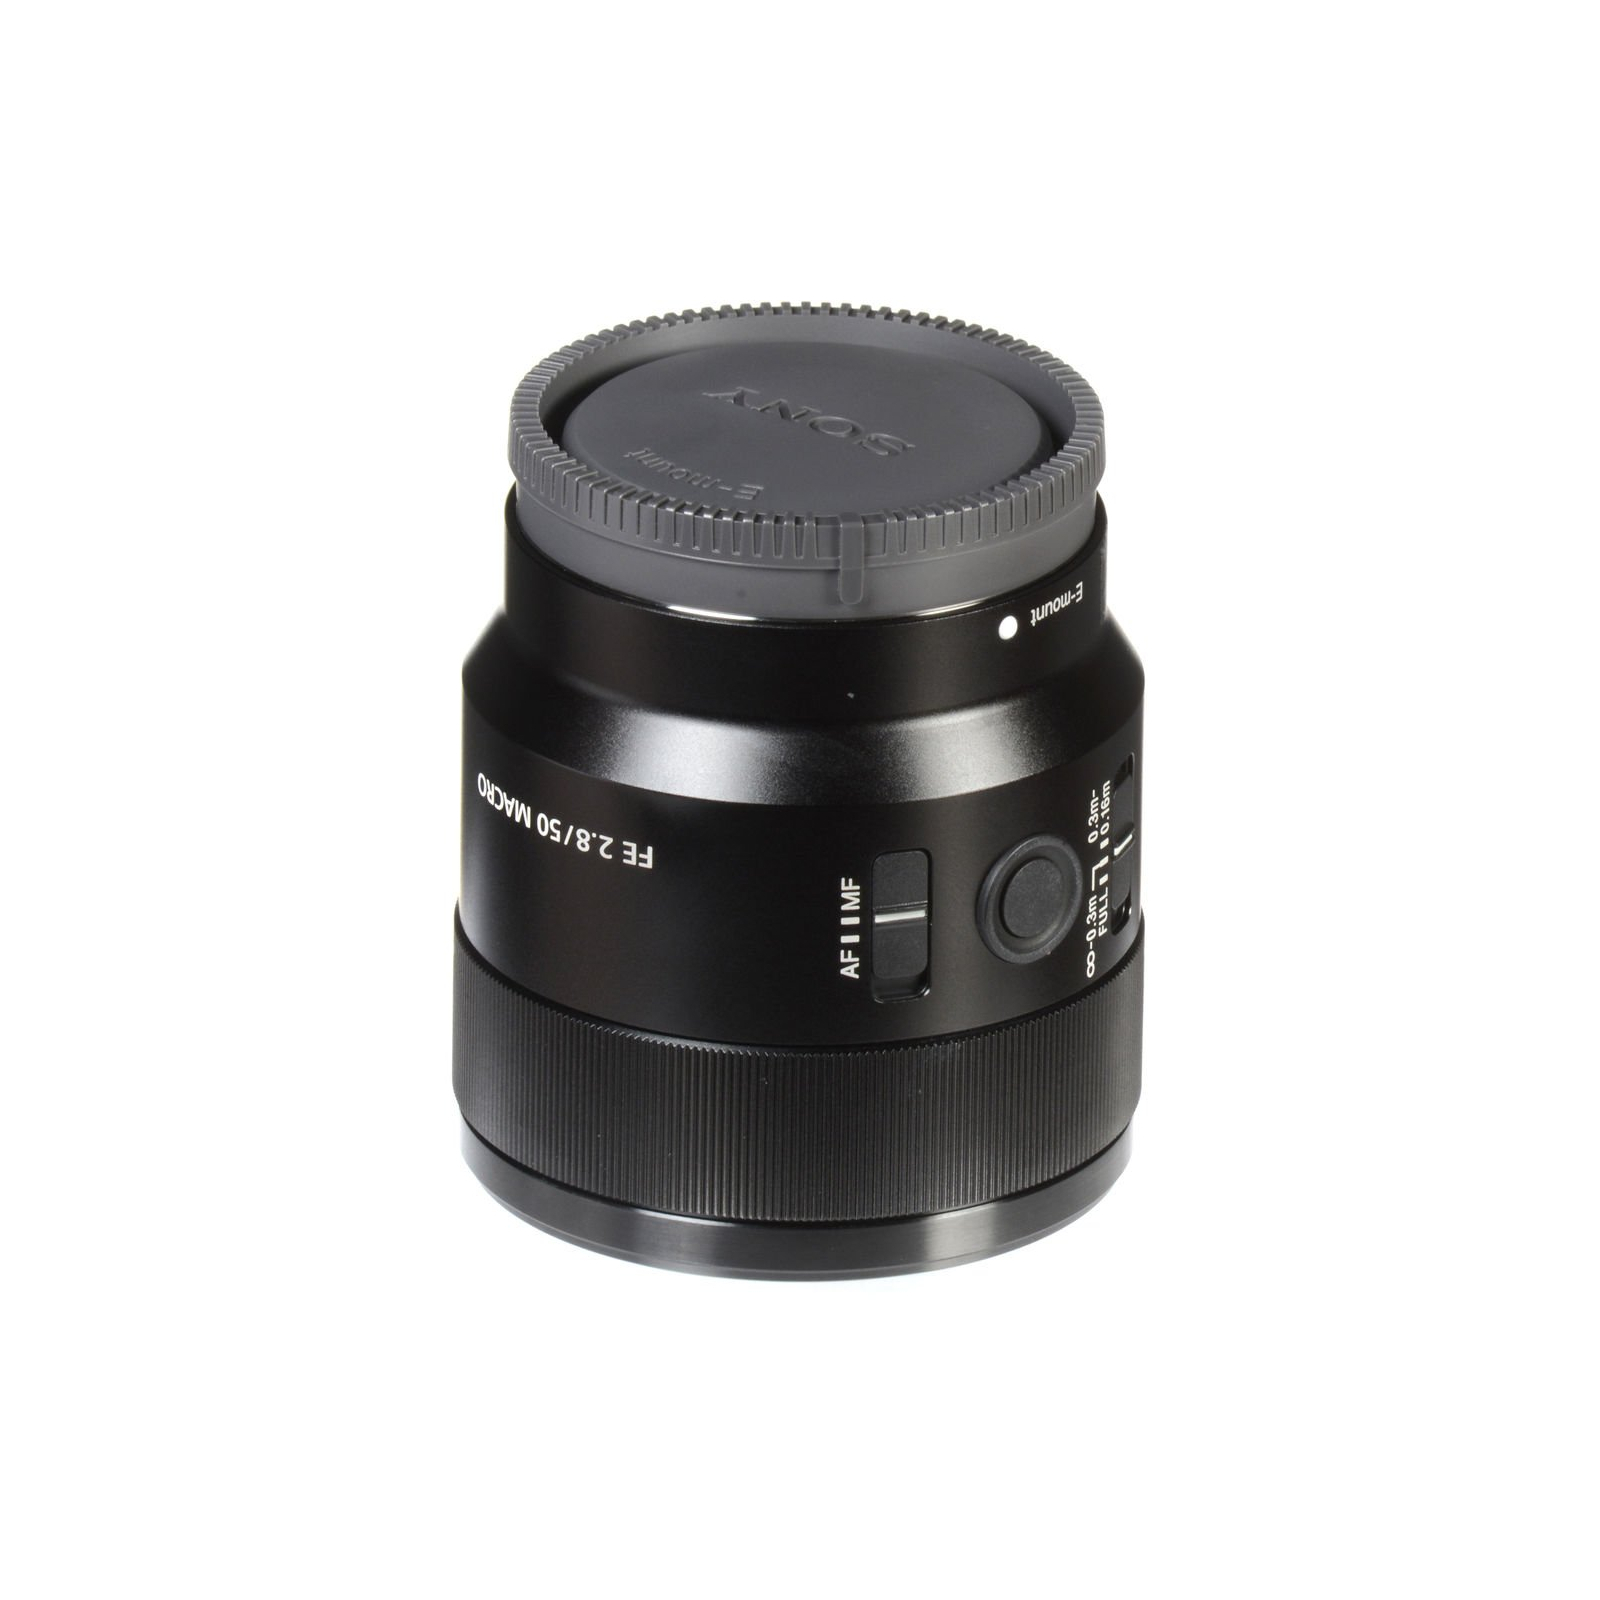 Об'єктив Sony 50mm, f/2.8 Macro для камер NEX FF (SEL50M28.SYX) зображення 5